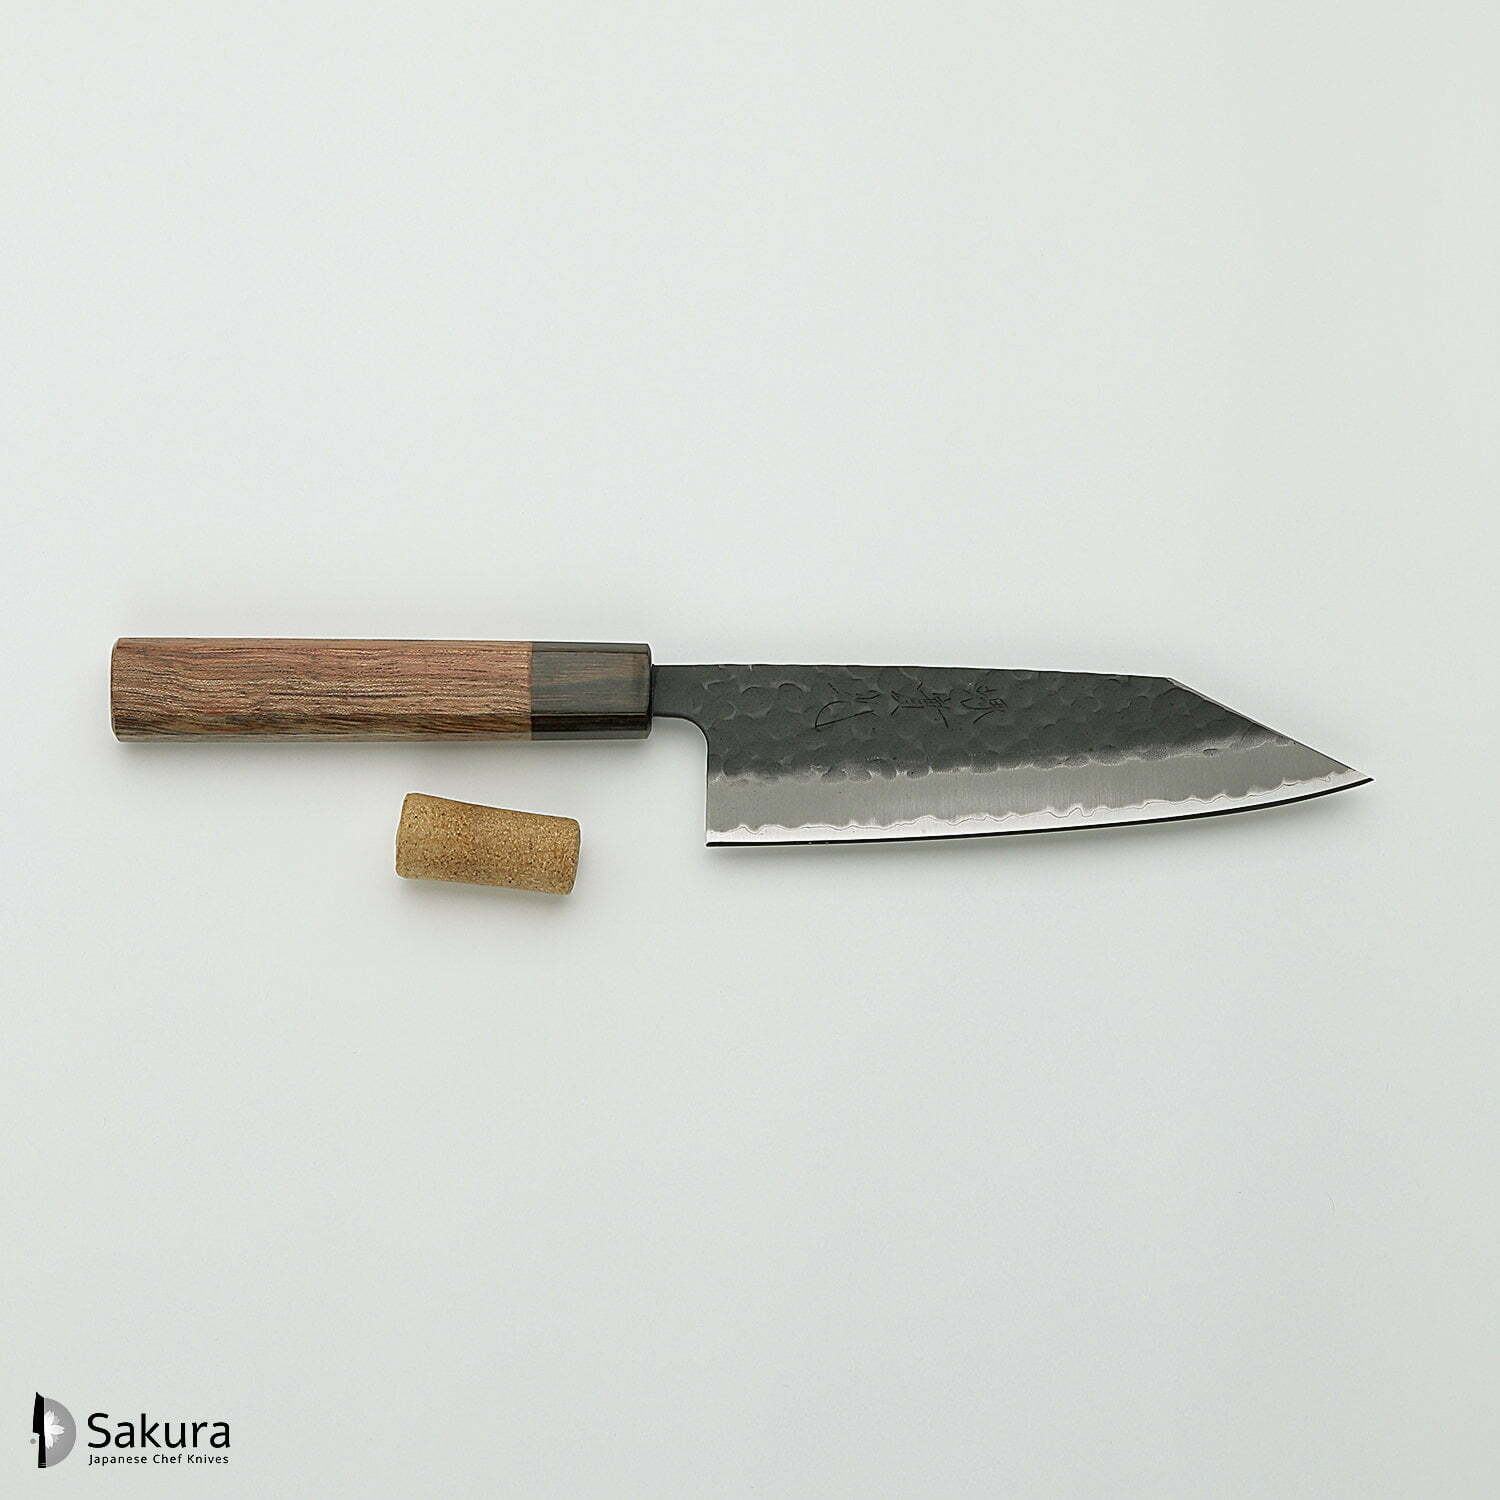 סכין רב-תכליתית בּוּנְקָה 155מ״מ מחוזקת 3 שכבות: פלדת פחמן יפנית מתקדמת מסוג Aogami Super עטופה פלדת אל-חלד גימור קורואיצ׳י שחור עם ריקוע פטיש ג׳יקו סאקאיי יפן